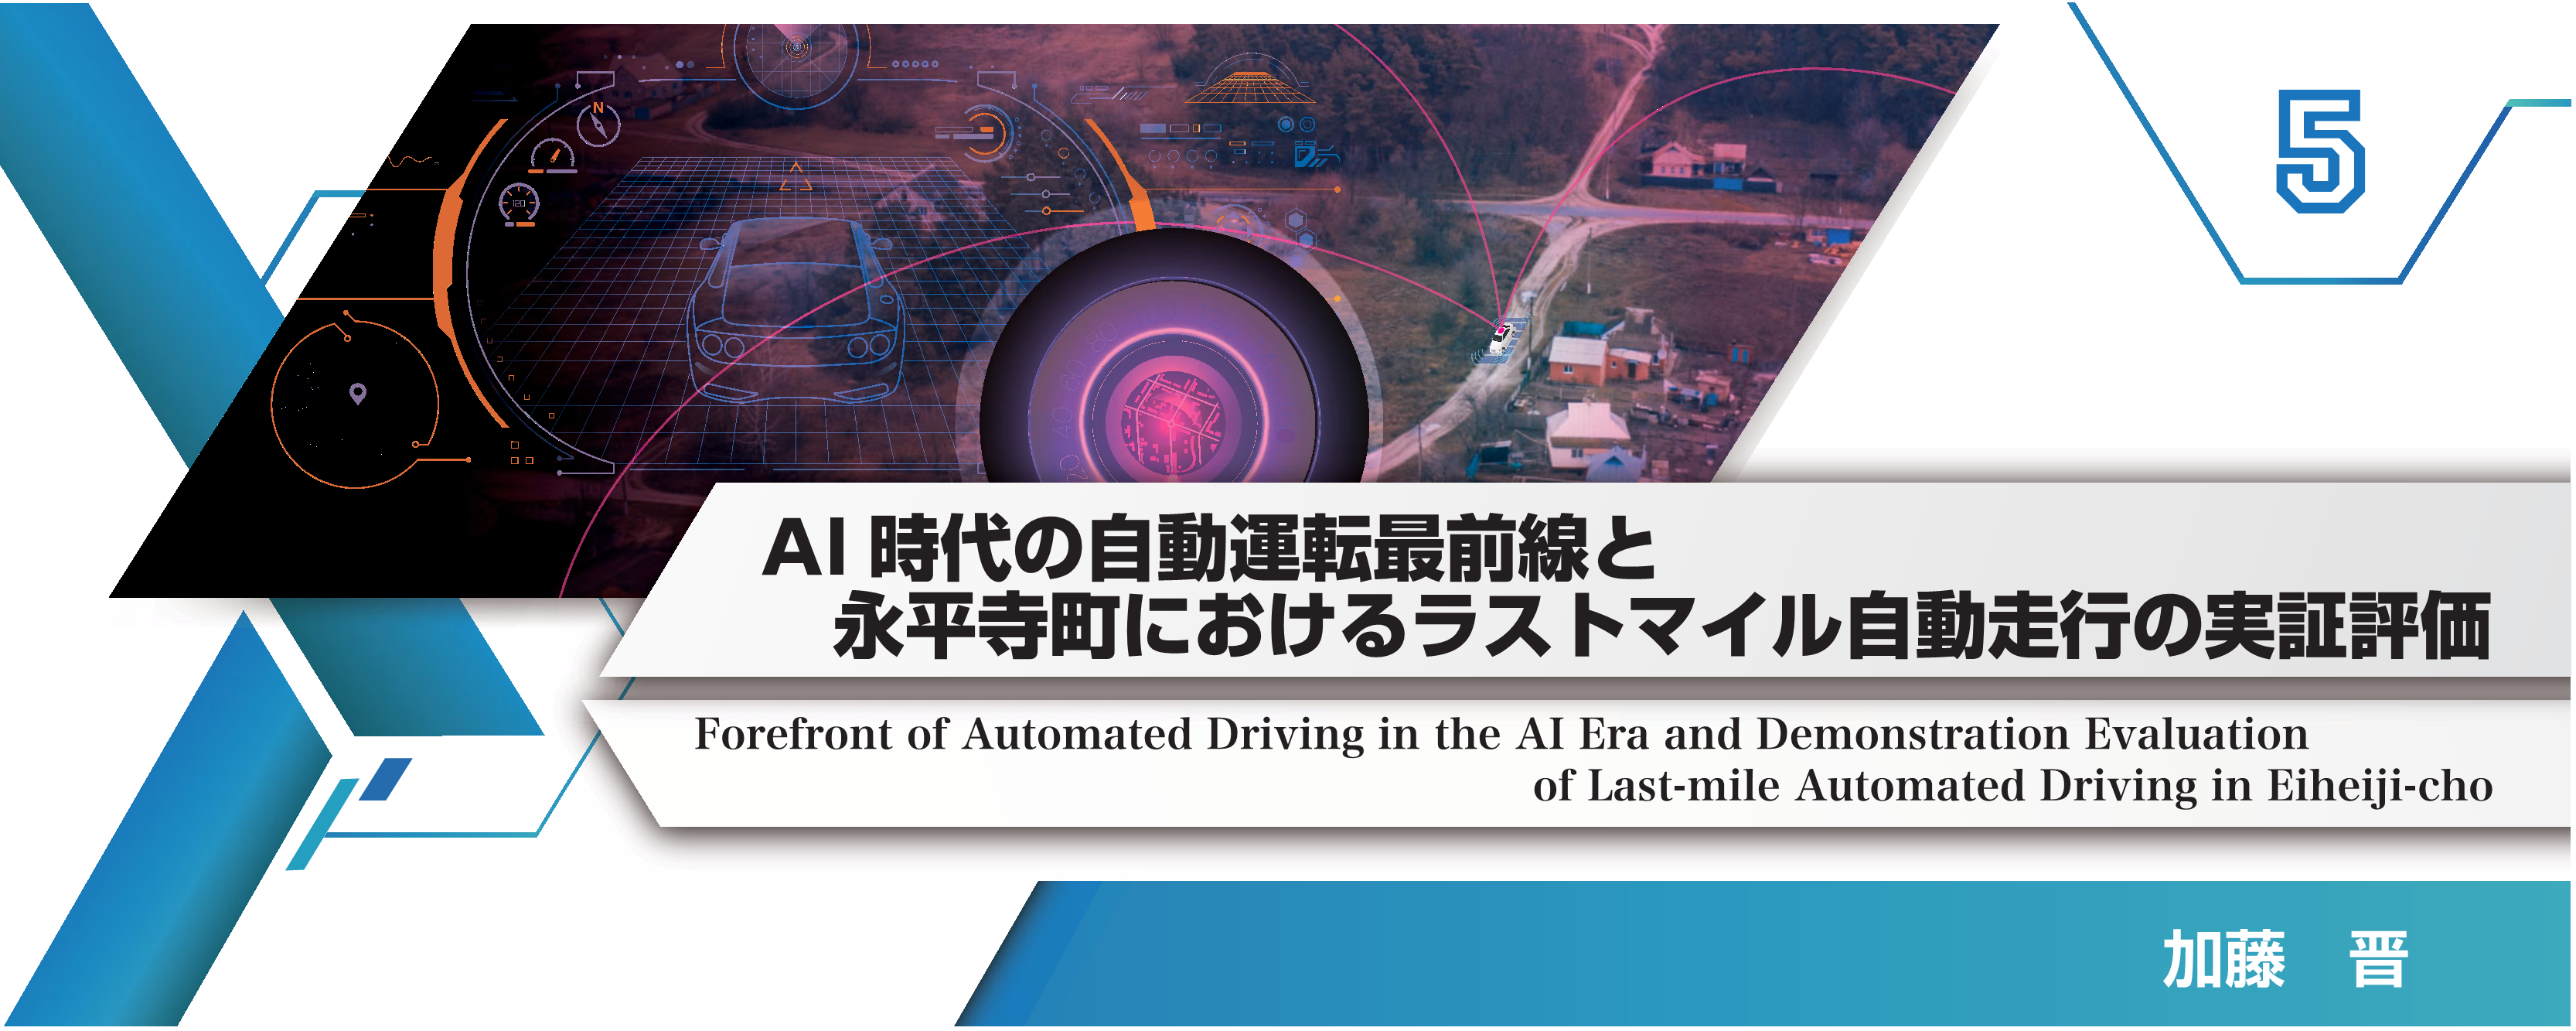 特別小特集 5. AI時代の自動運転最前線と永平寺町におけるラストマイル自動走行の実証評価